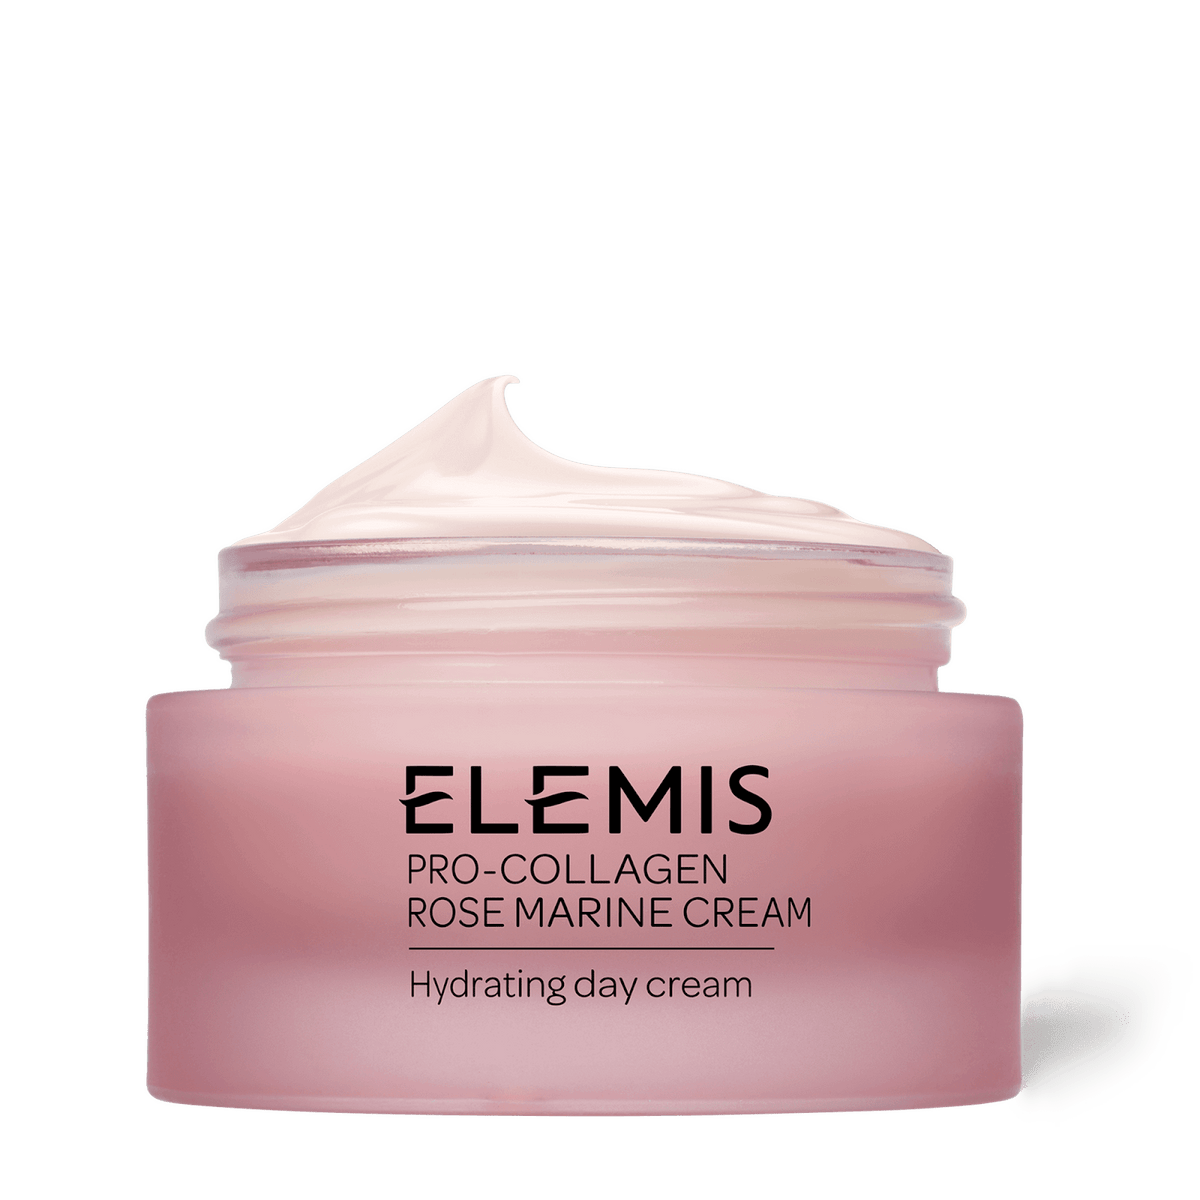 Elemis Crema viso Pro-Collagen Rose Marine Cream 50ml